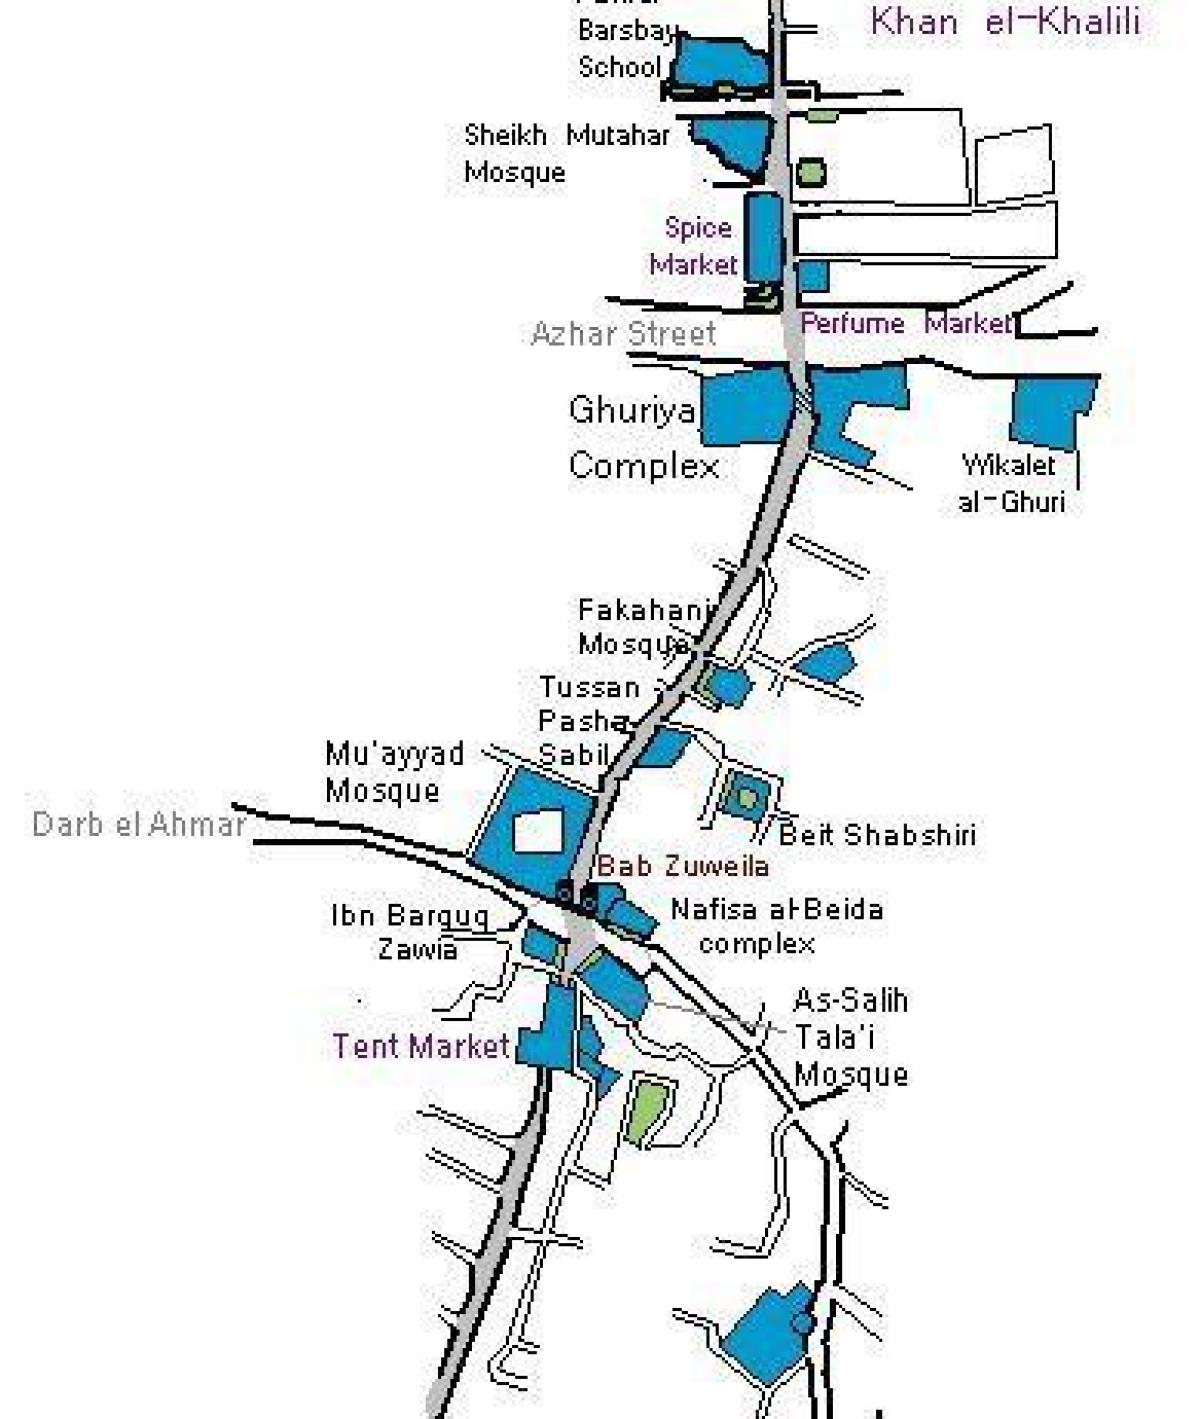 khan el khalili bazar zemljevid